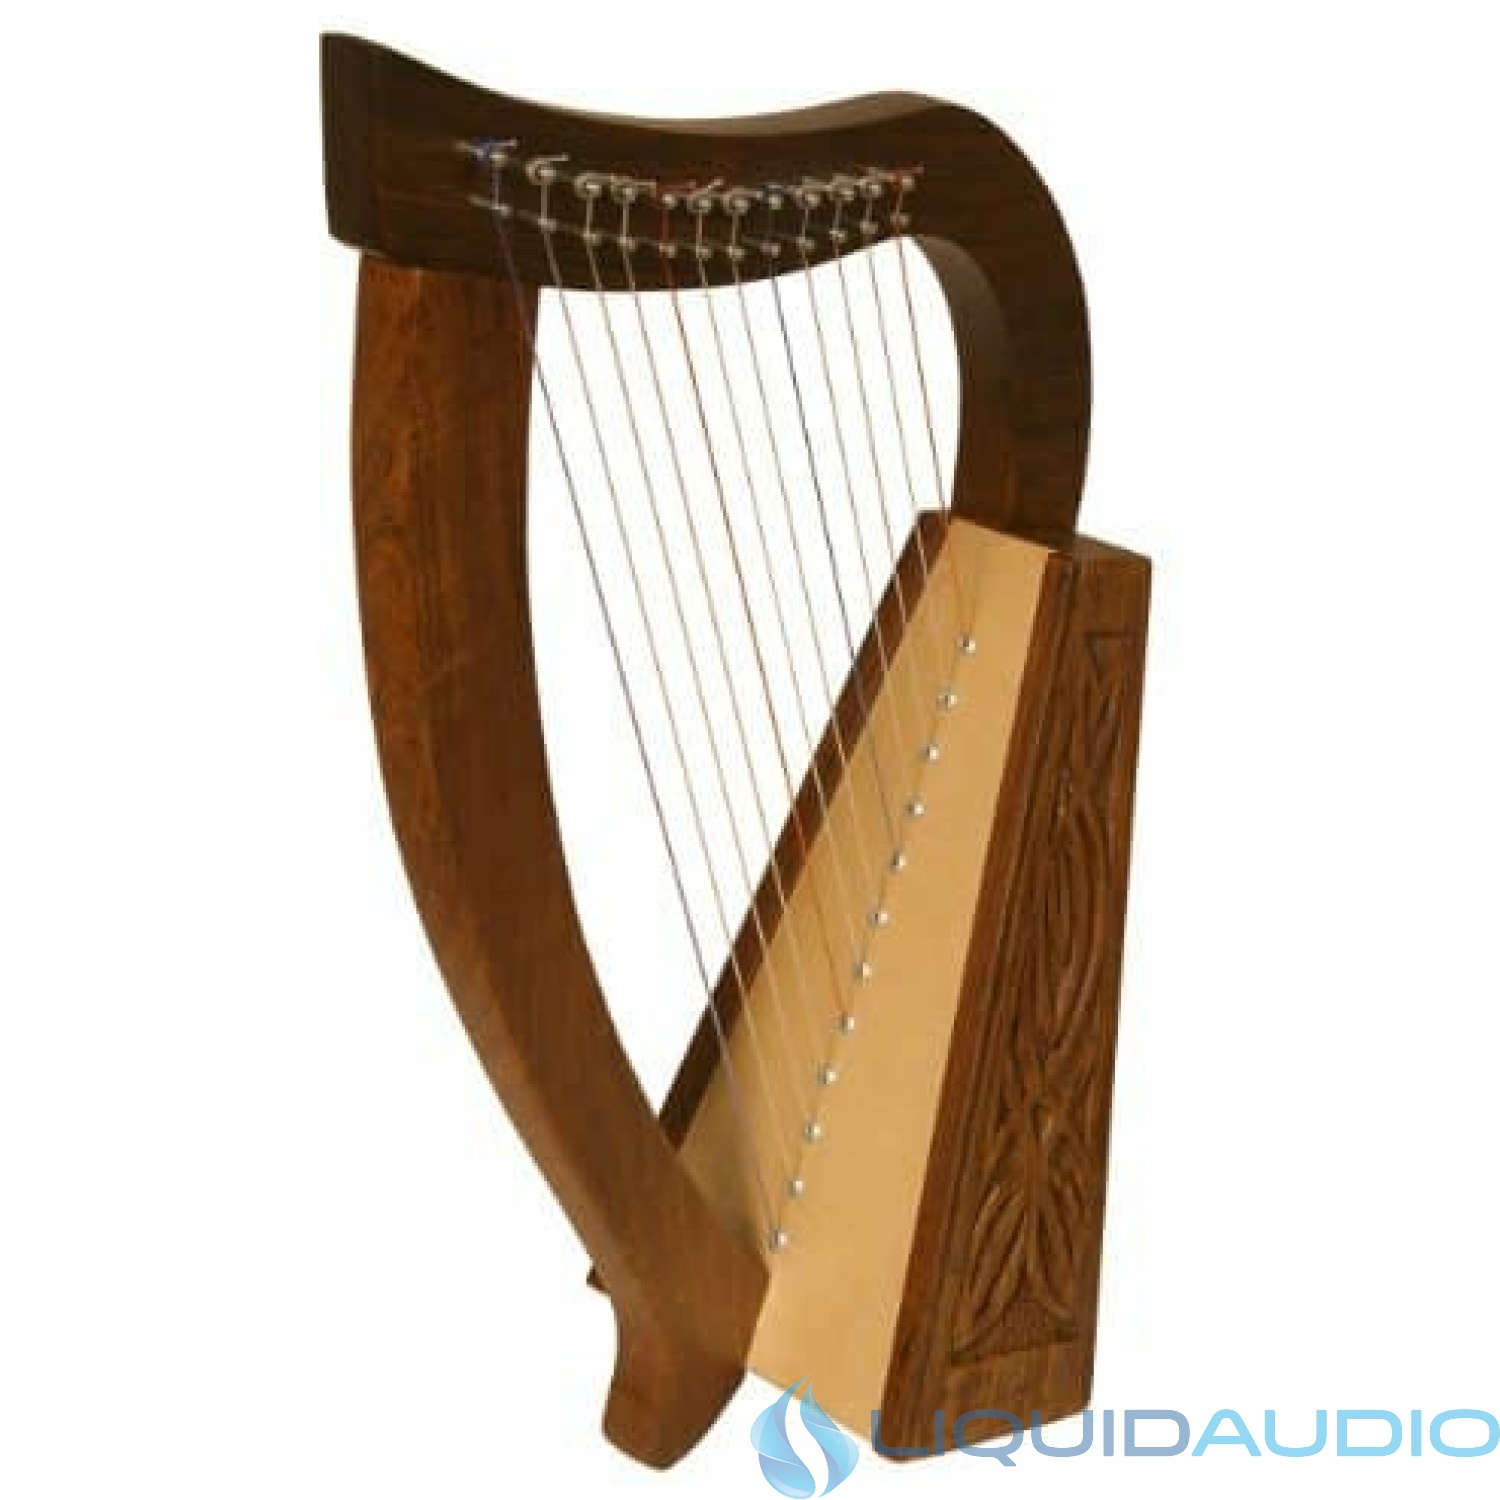 Roosebeck Baby Harp TM, 12 Strings, Knotwork